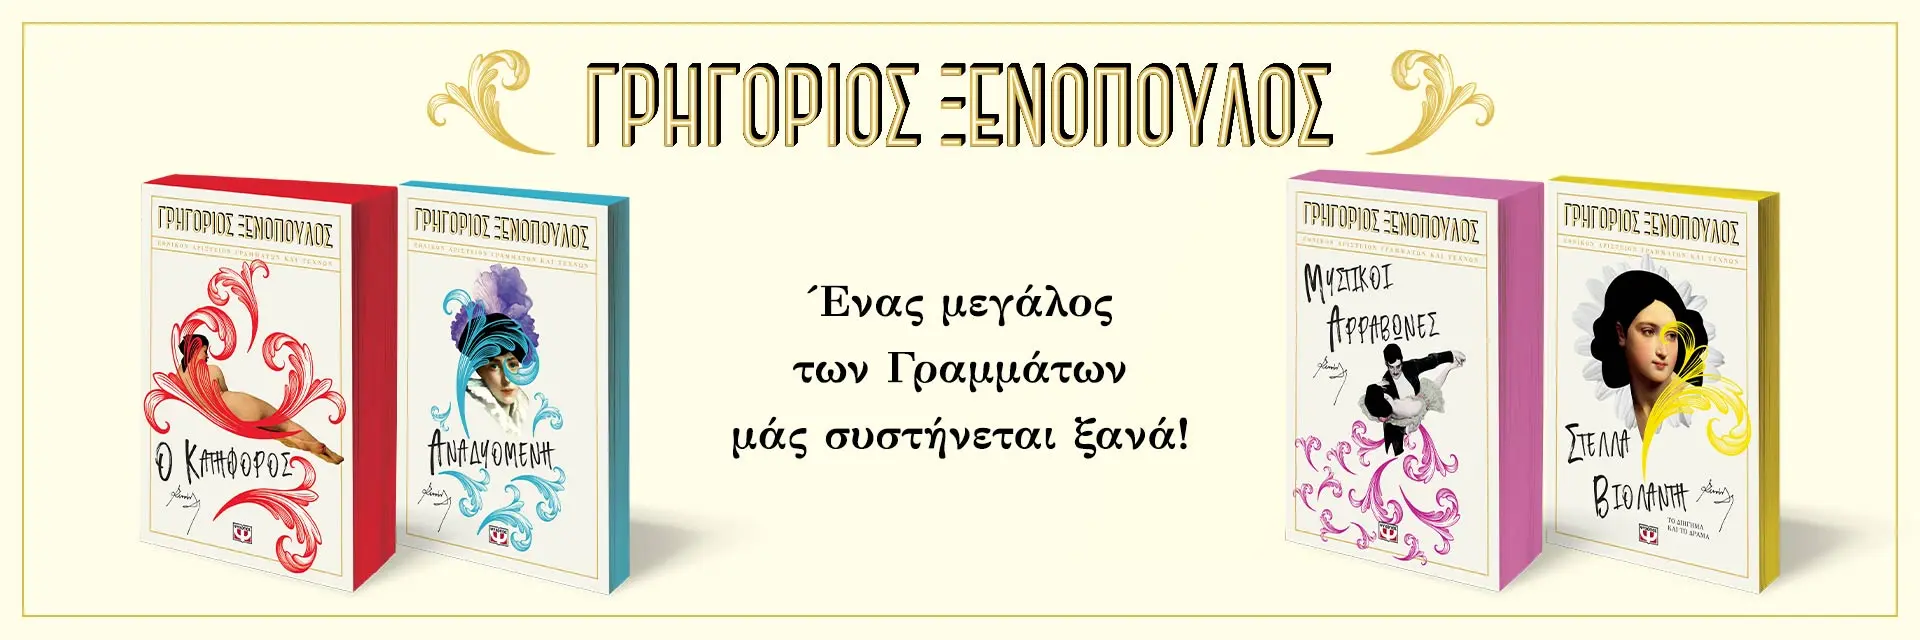 Γρηγόριος Ξενόπουλος – Ένας μεγάλος των Γραμμάτων στις Εκδόσεις Ψυχογιός